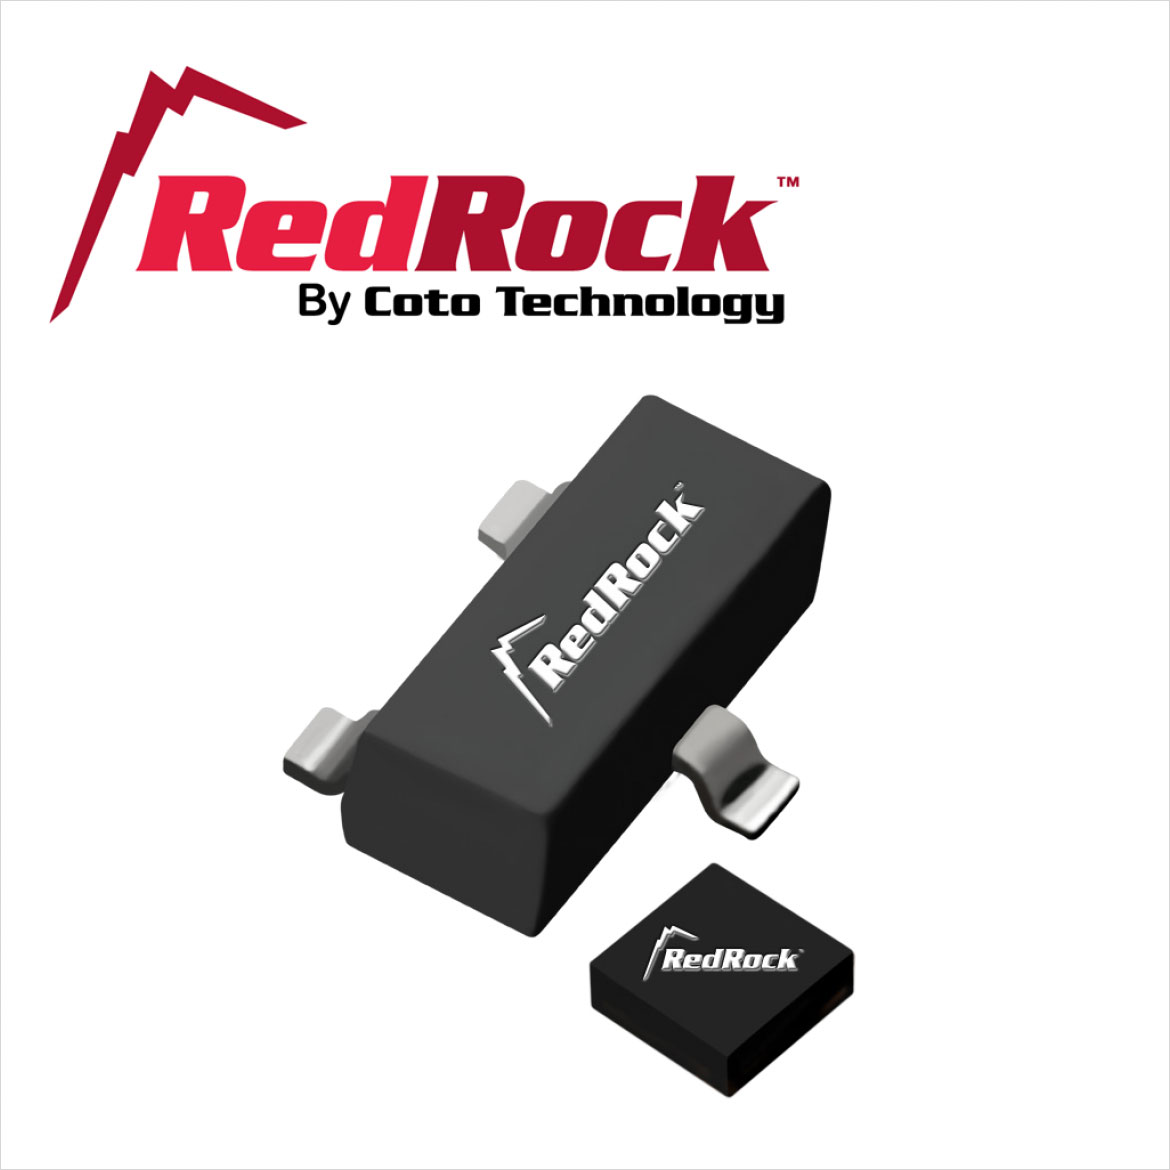 RedRock™ TMR磁気センサーのイメージ写真